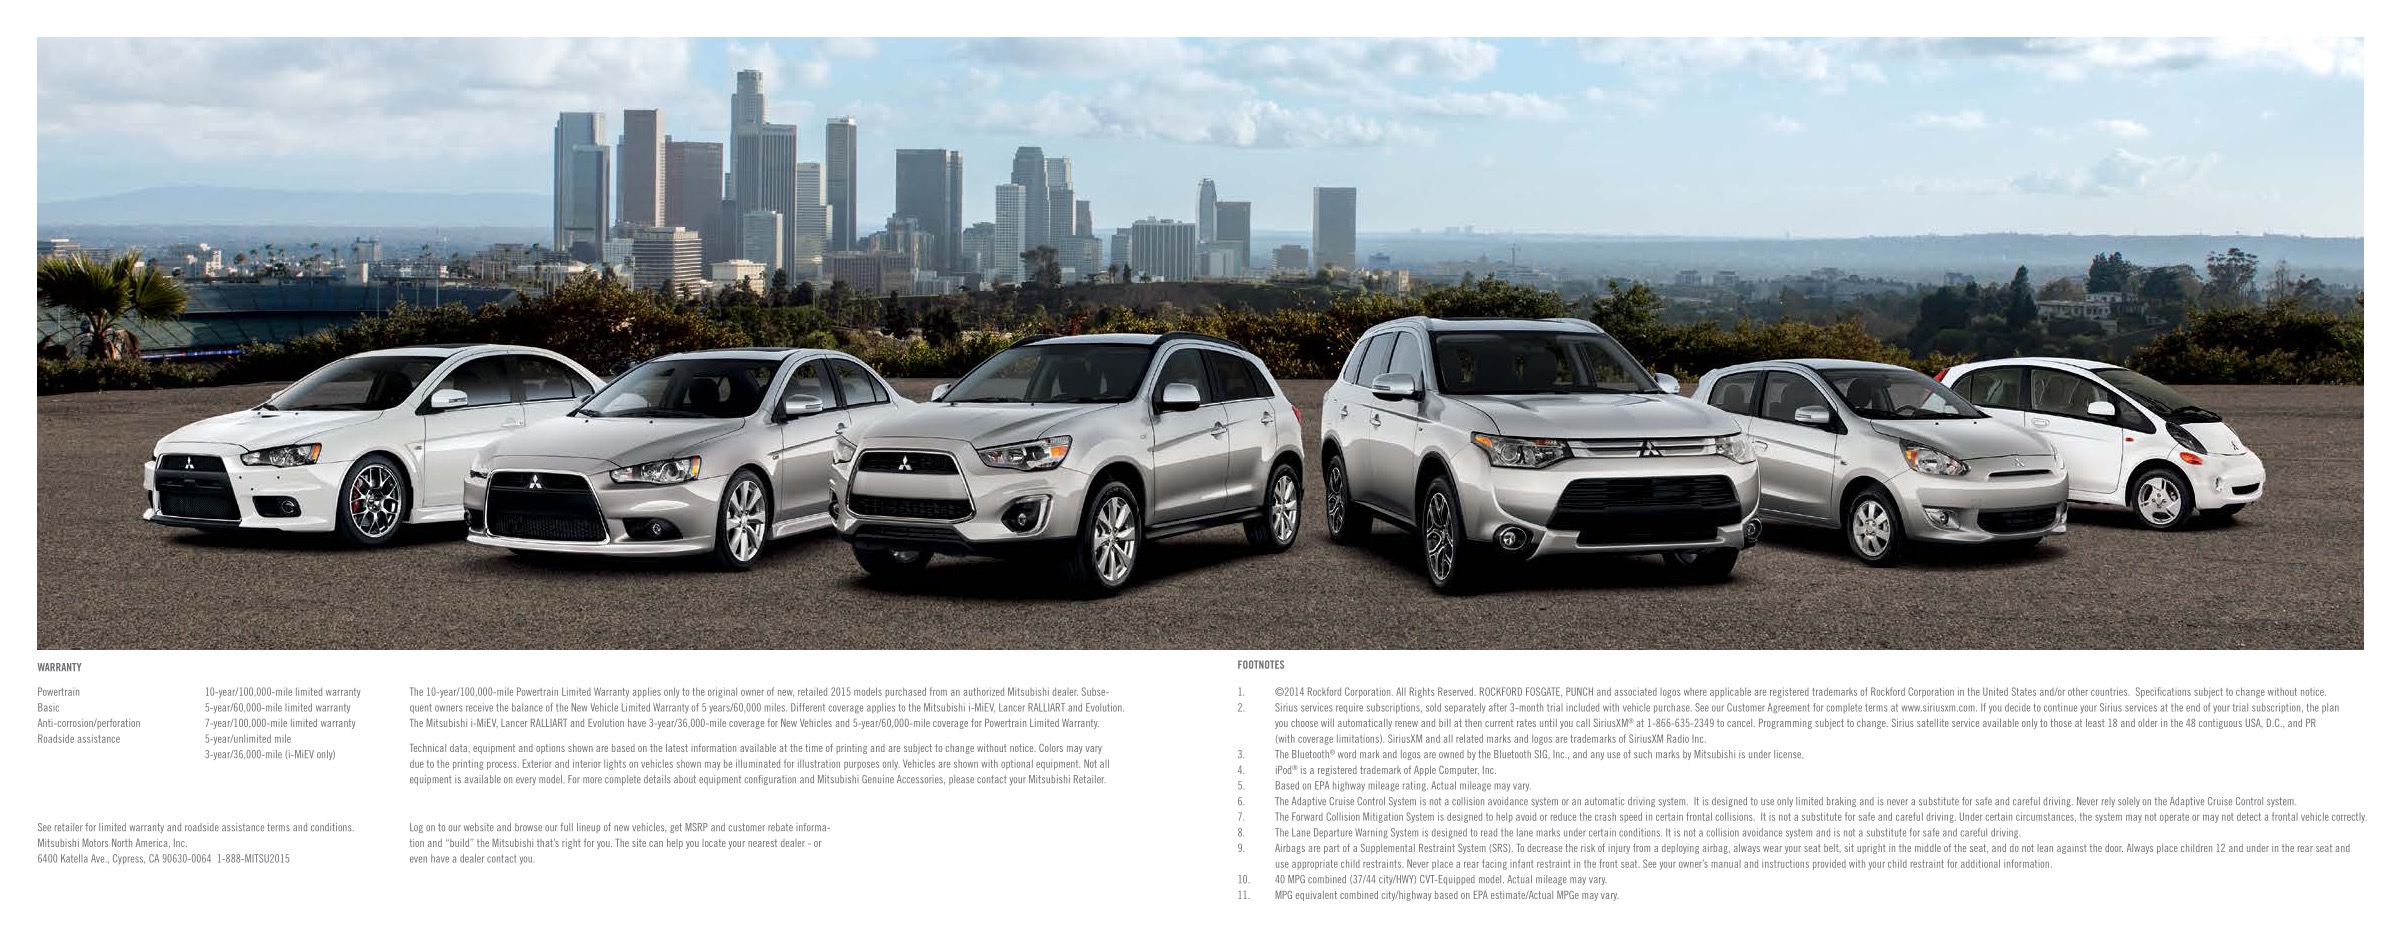 2015 Mitsubishi Full Line Brochure Page 6